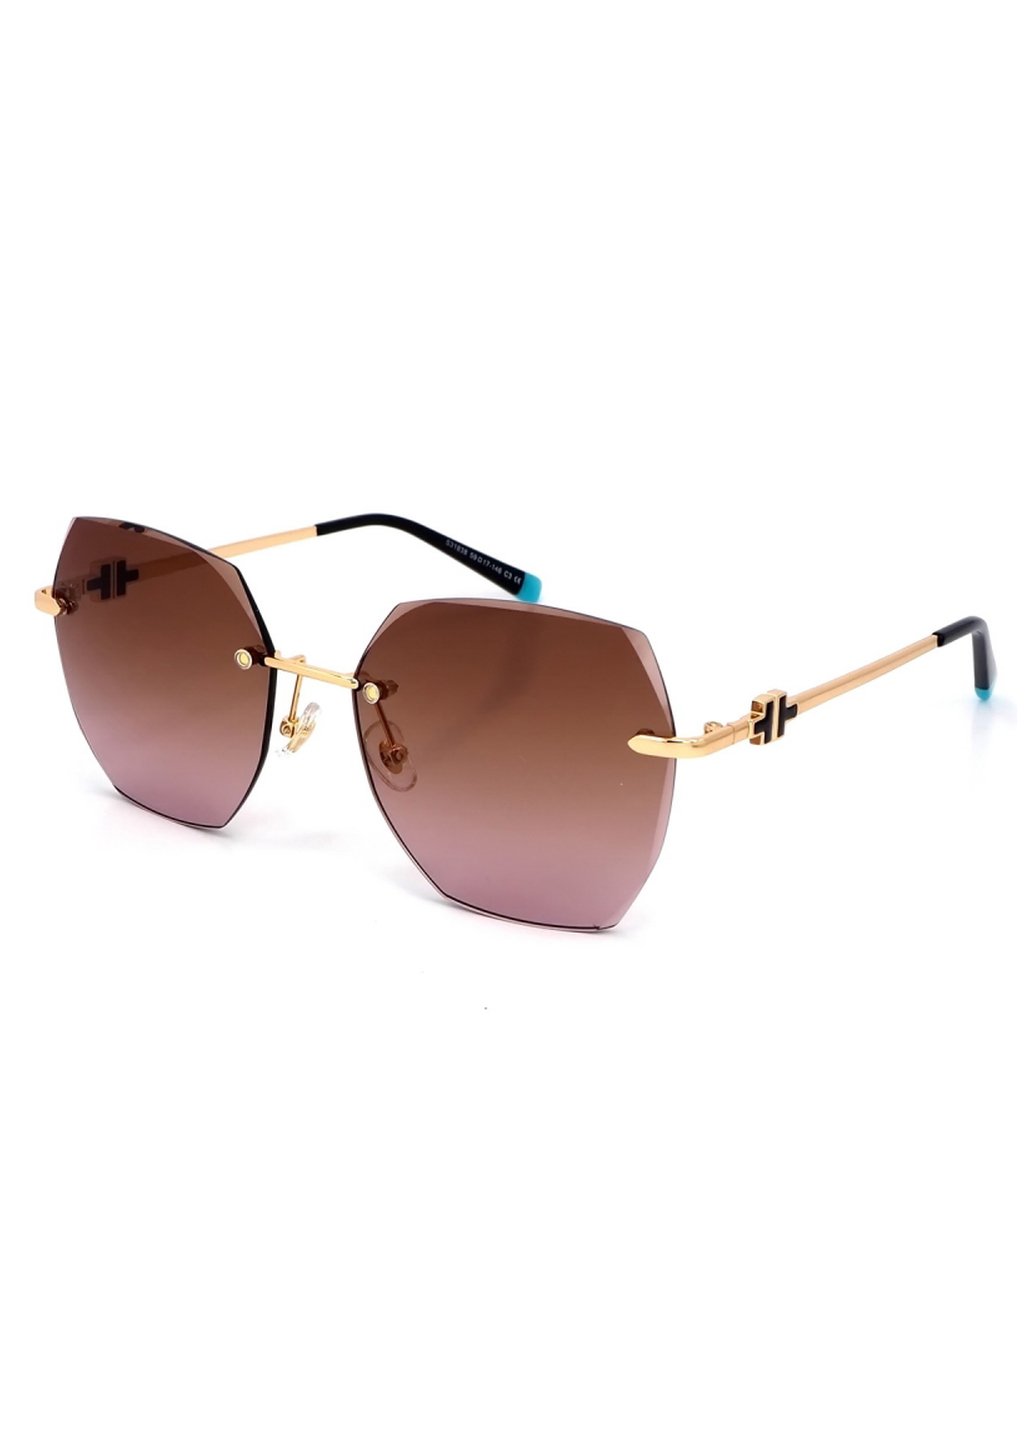 Купить Женские солнцезащитные очки Merlini с поляризацией S31838 117103 - Золотистый в интернет-магазине